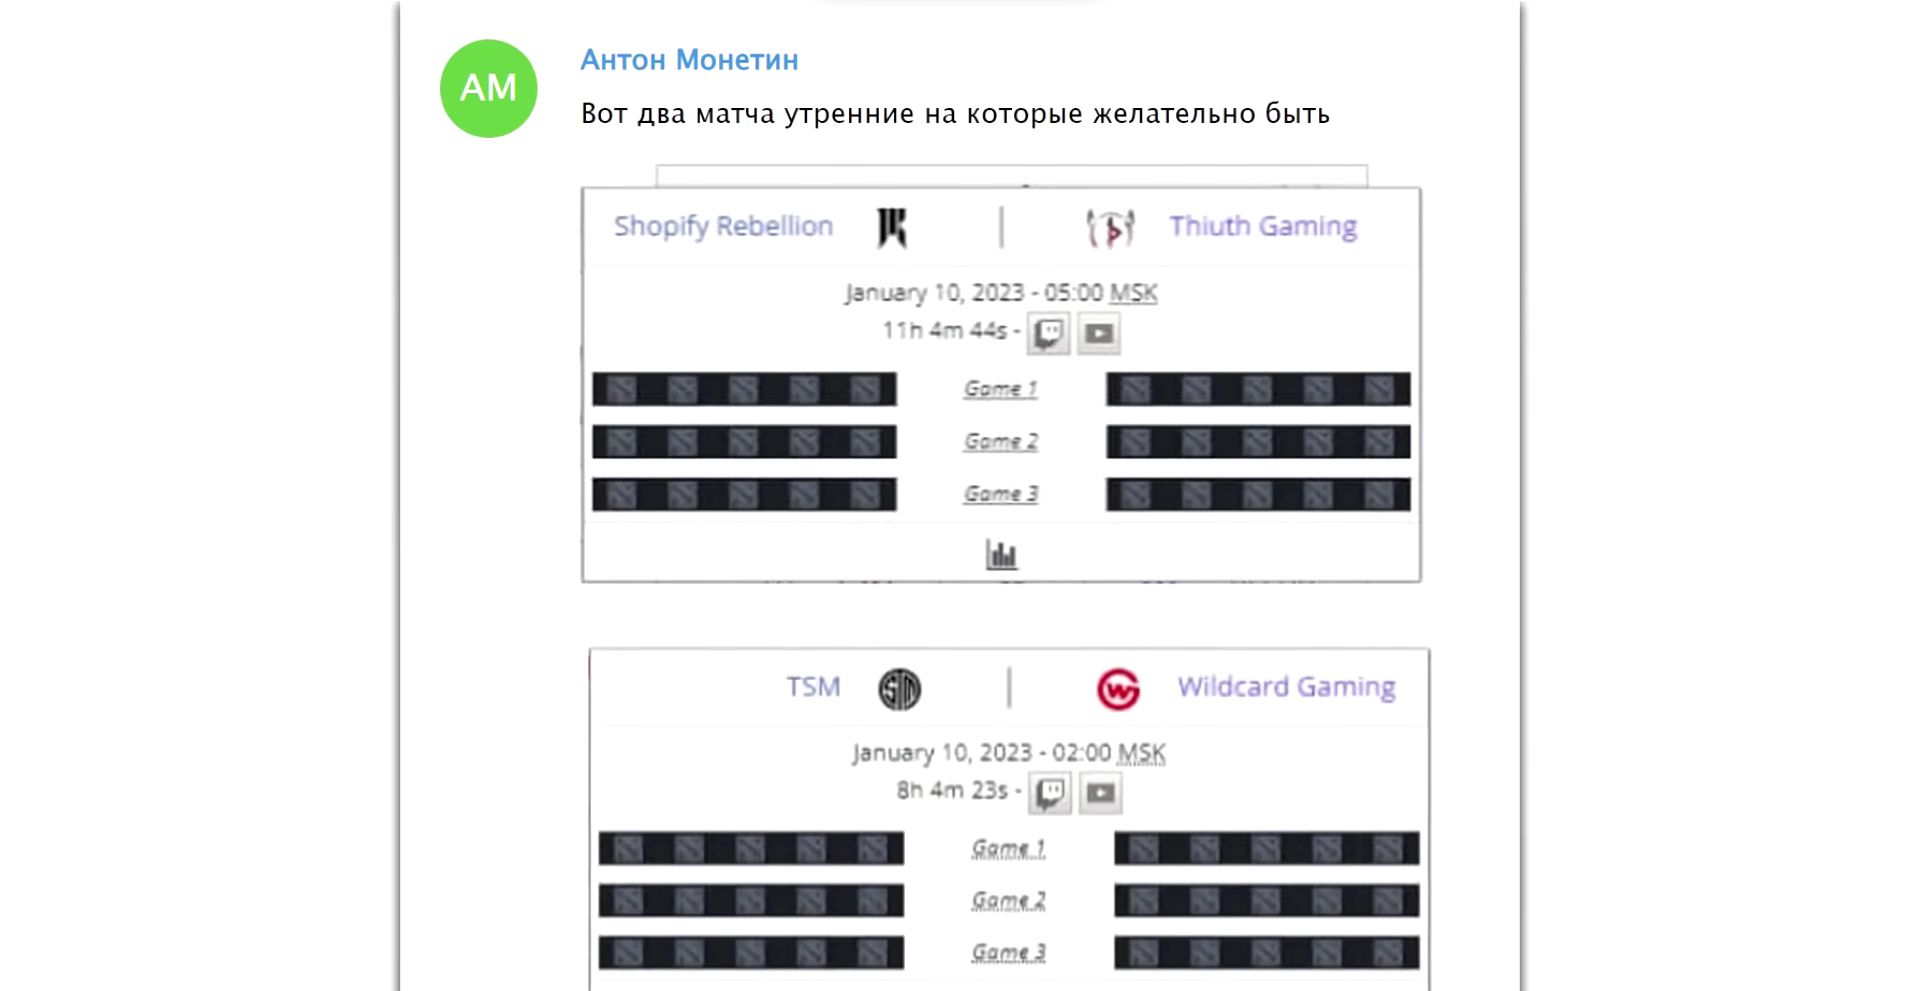 Скриншоты переписок знакомого Morf и Антона Монетина | Источник: ролик Morf на YouTube.